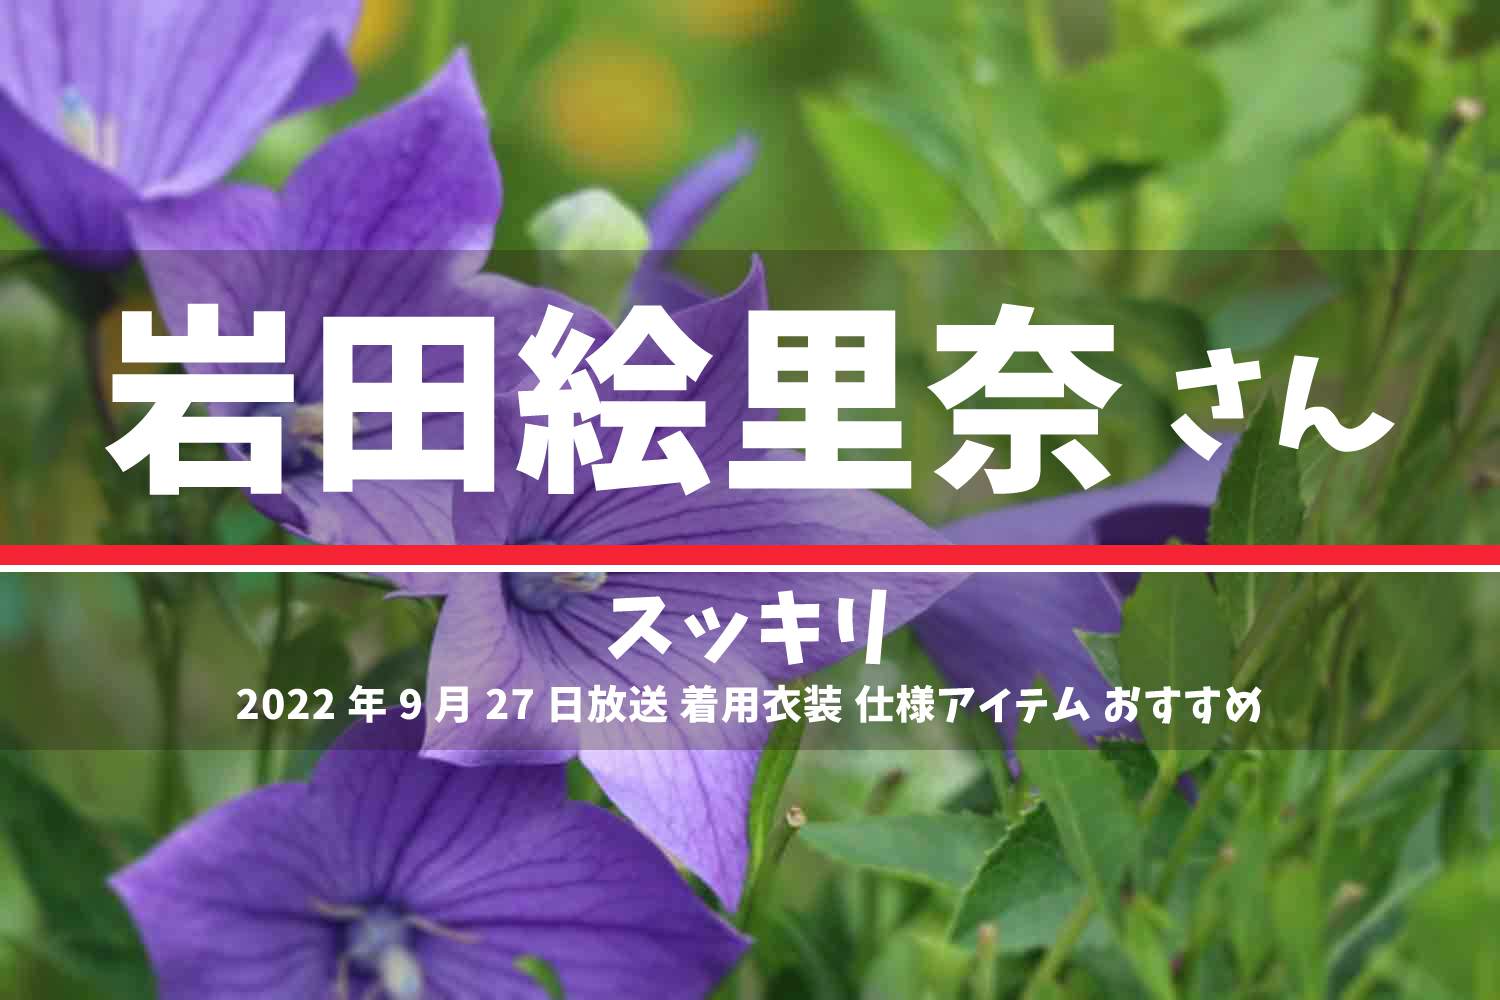 スッキリ 岩田絵里奈さん 番組 衣装 2022年9月27日放送